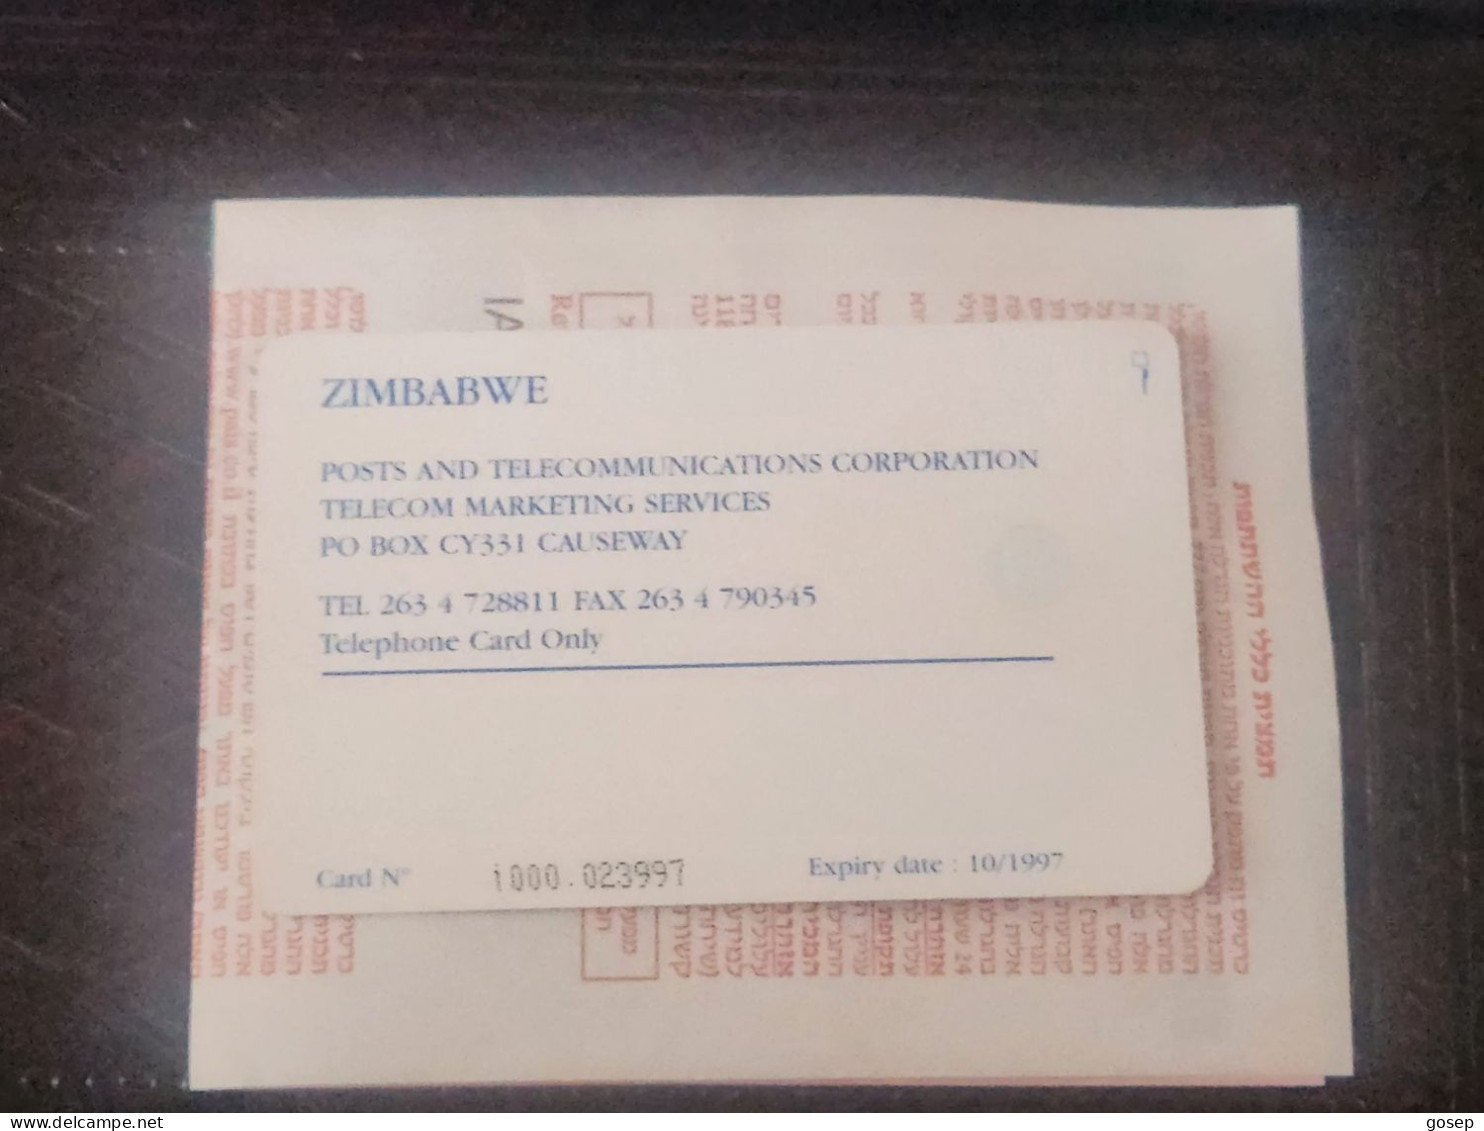 Zimbabwe-(ZIM-01)-cone Shaped Building-(81)-($30)-(1000-023997)-(10/97)(tirage-25.000)-used Card+1card Free - Simbabwe